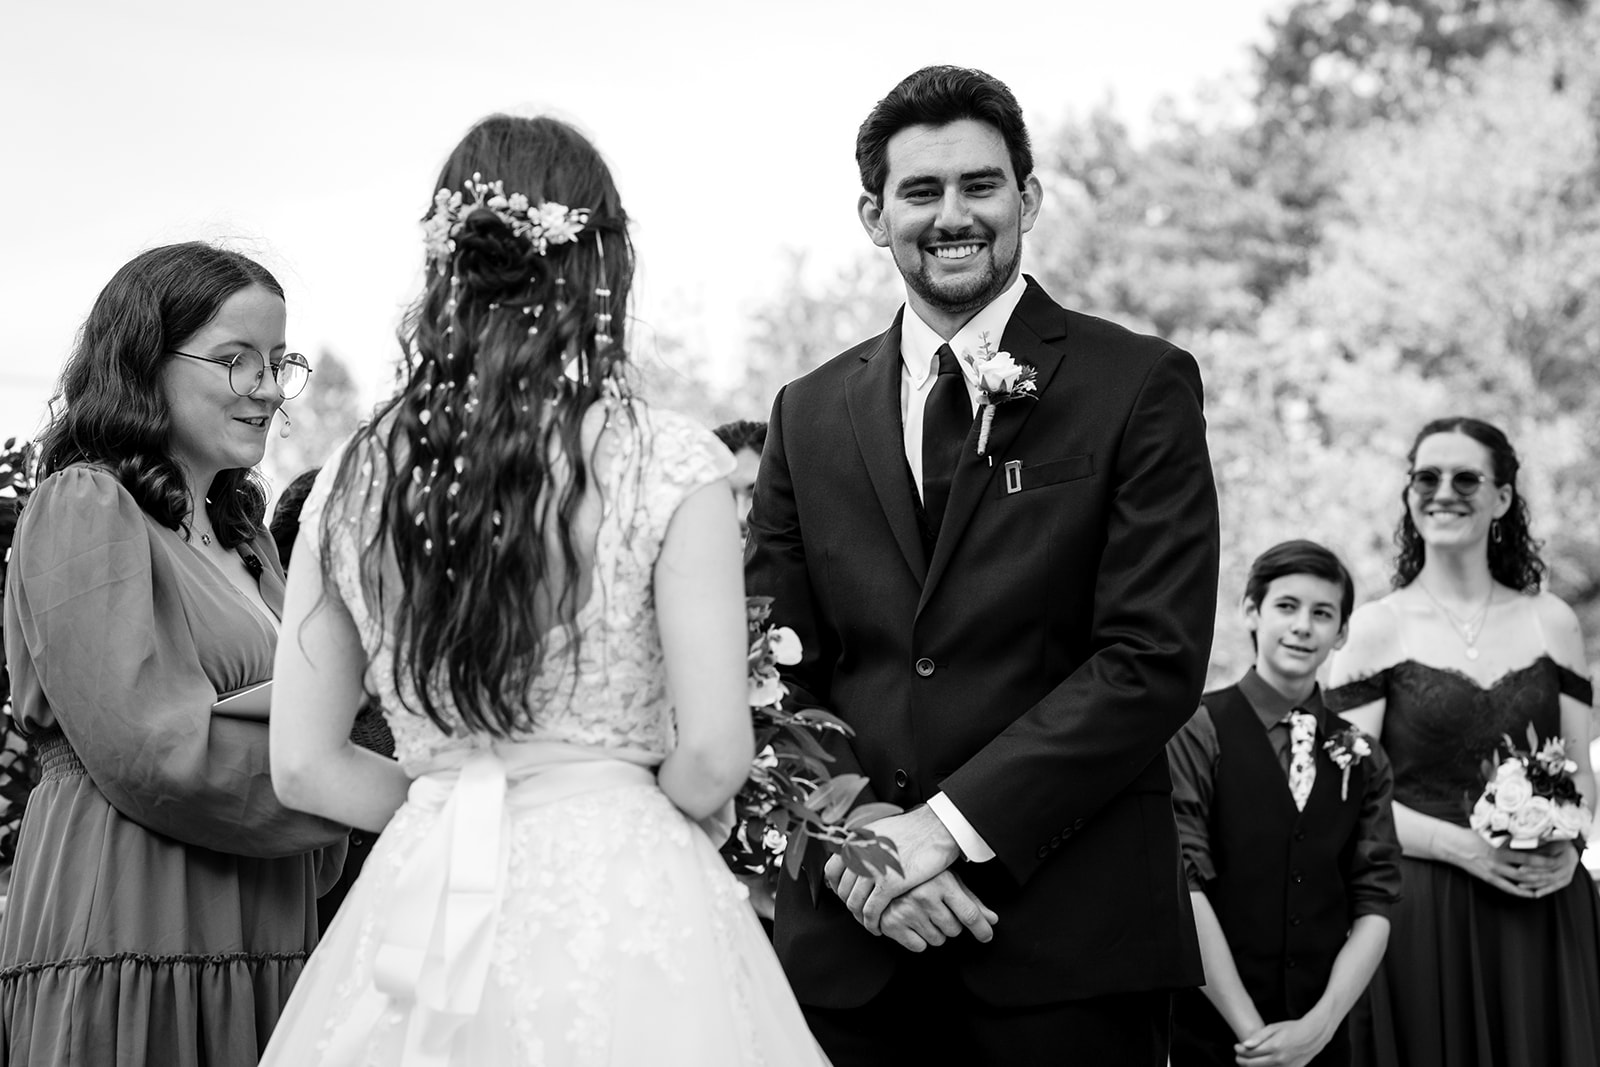 Fredericksburg VA Wedding Ceremony by Potok's World Photography